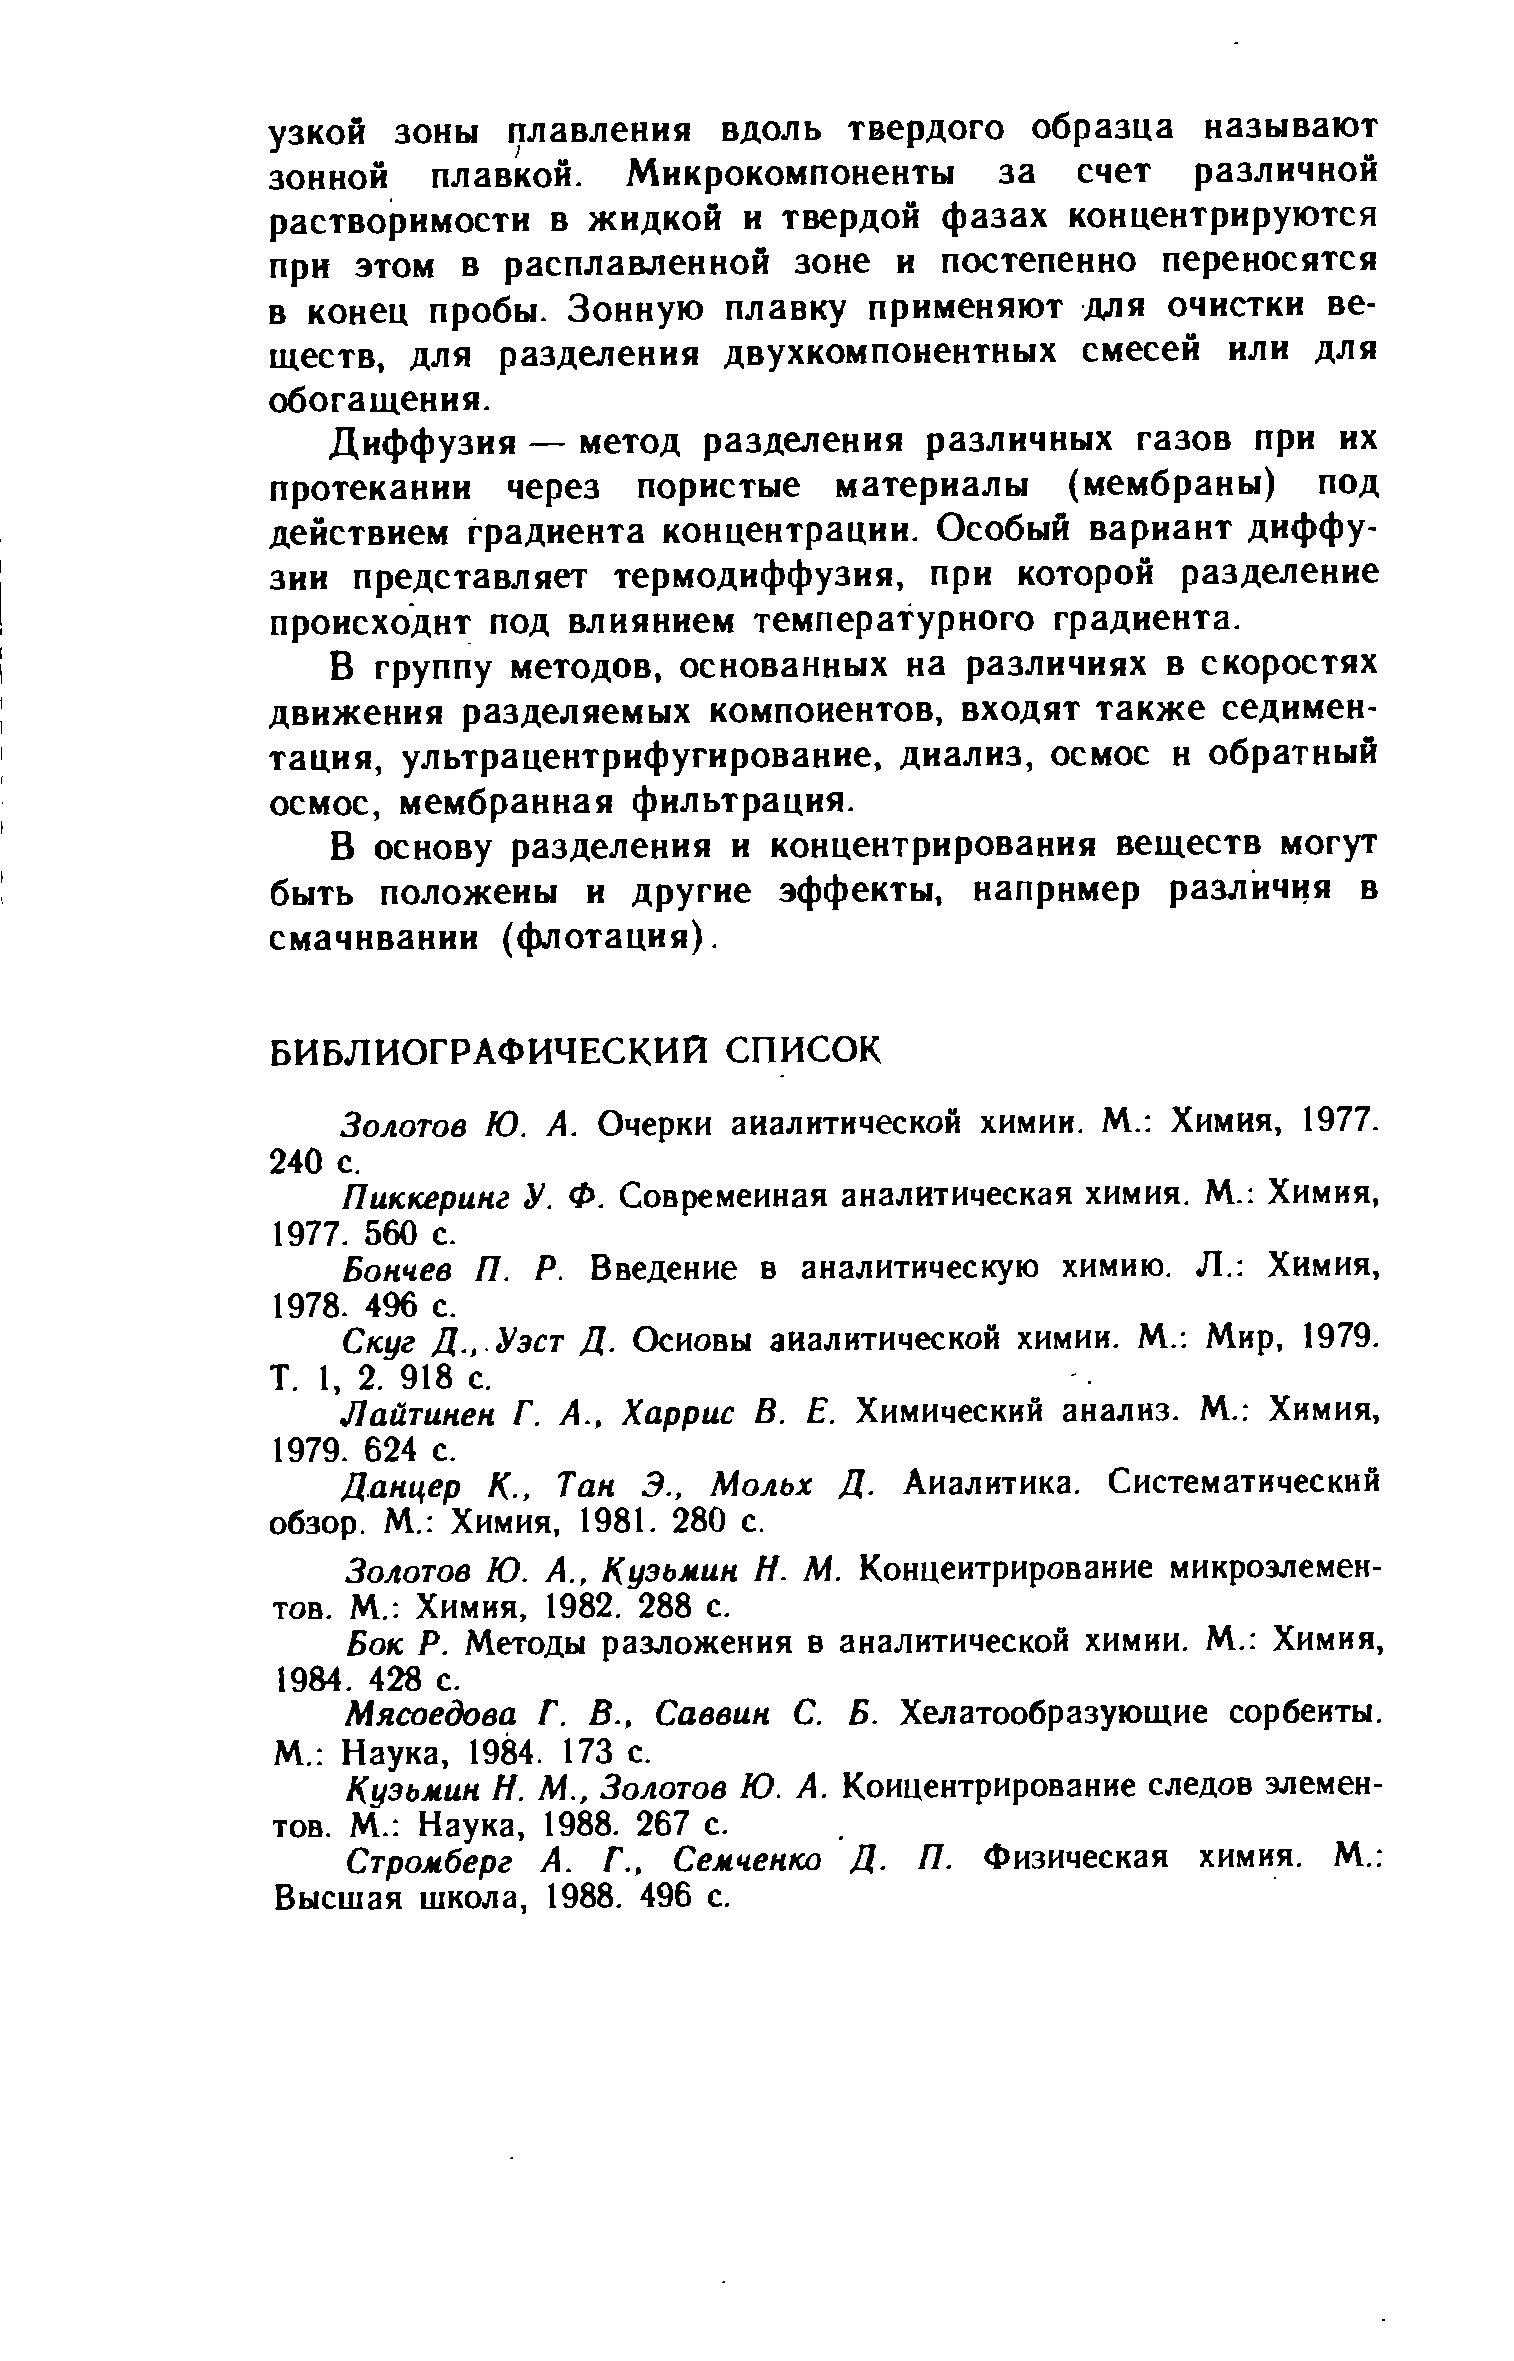 Золотов Ю. А. Очерки аналитической химии. М. Химия, 1977. 240 с.